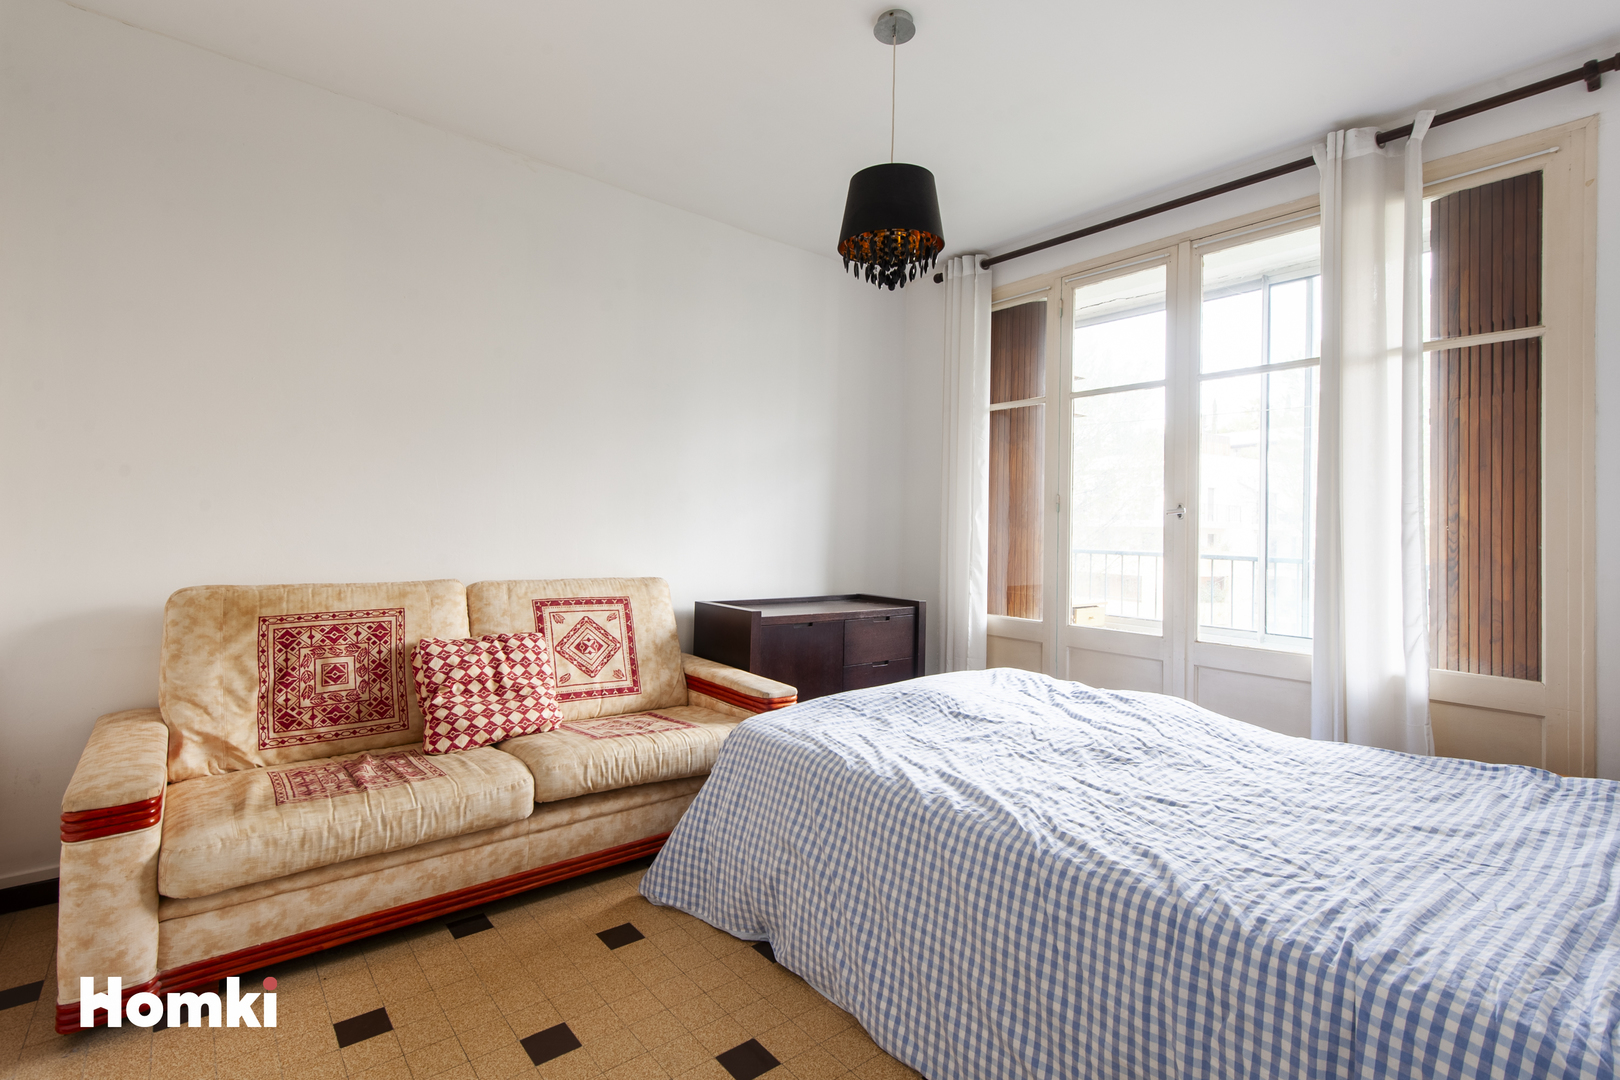 Homki - Vente Appartement  de 44.0 m² à Aix-en-Provence 13090